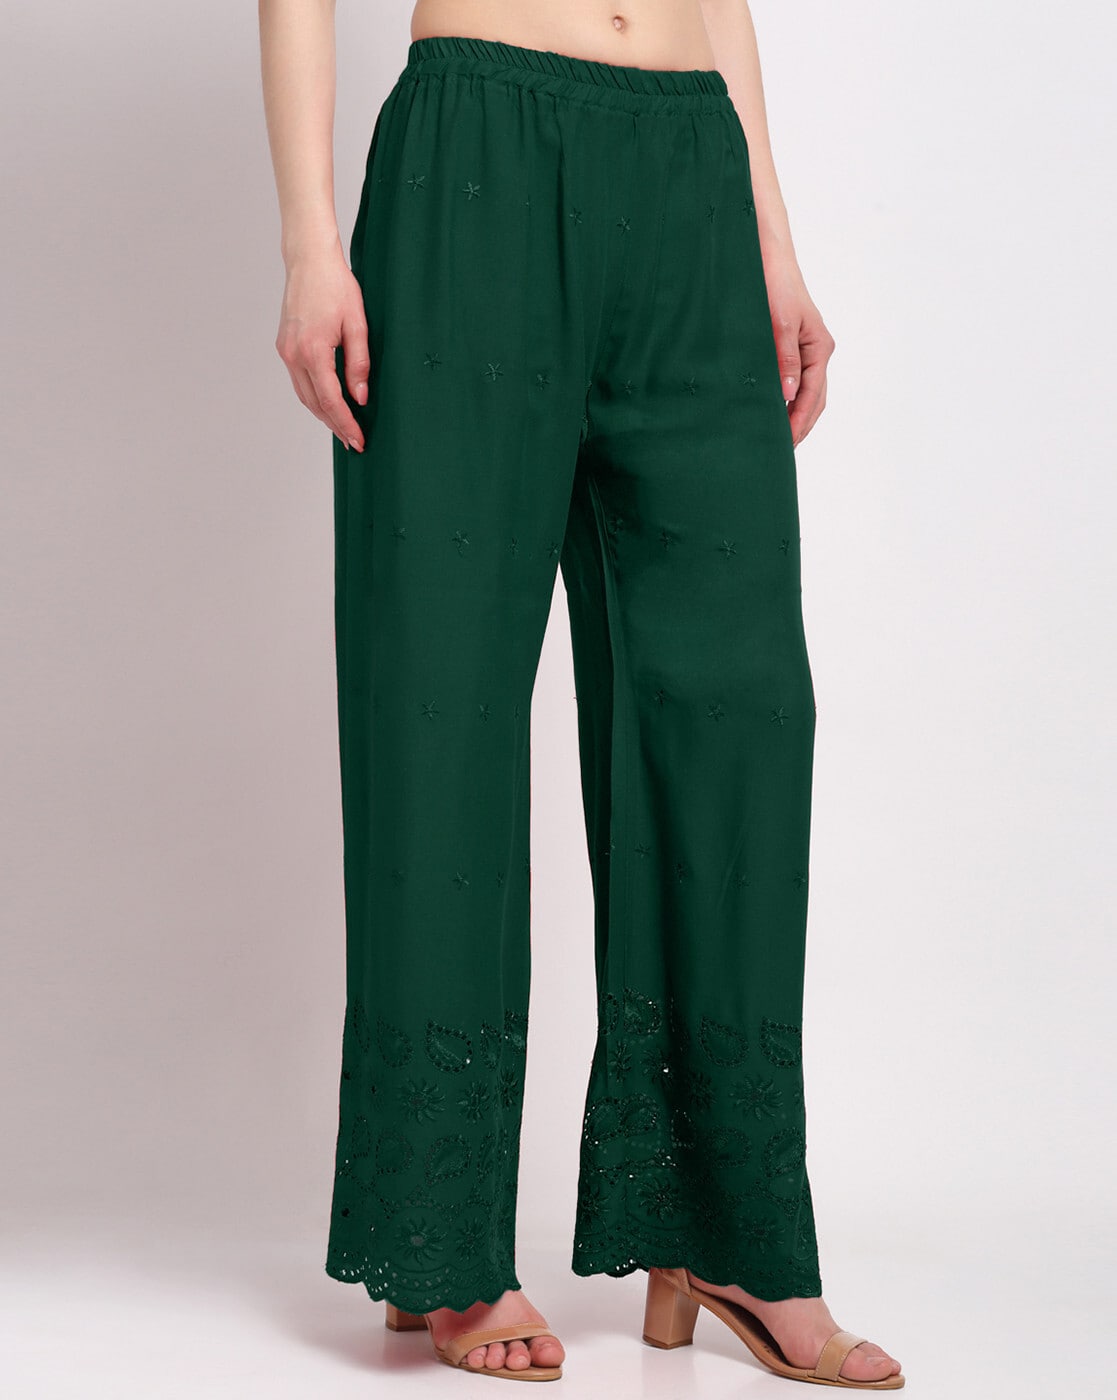 Buy Green Trousers  Pants for Women by KLOTTHE Online  Ajiocom